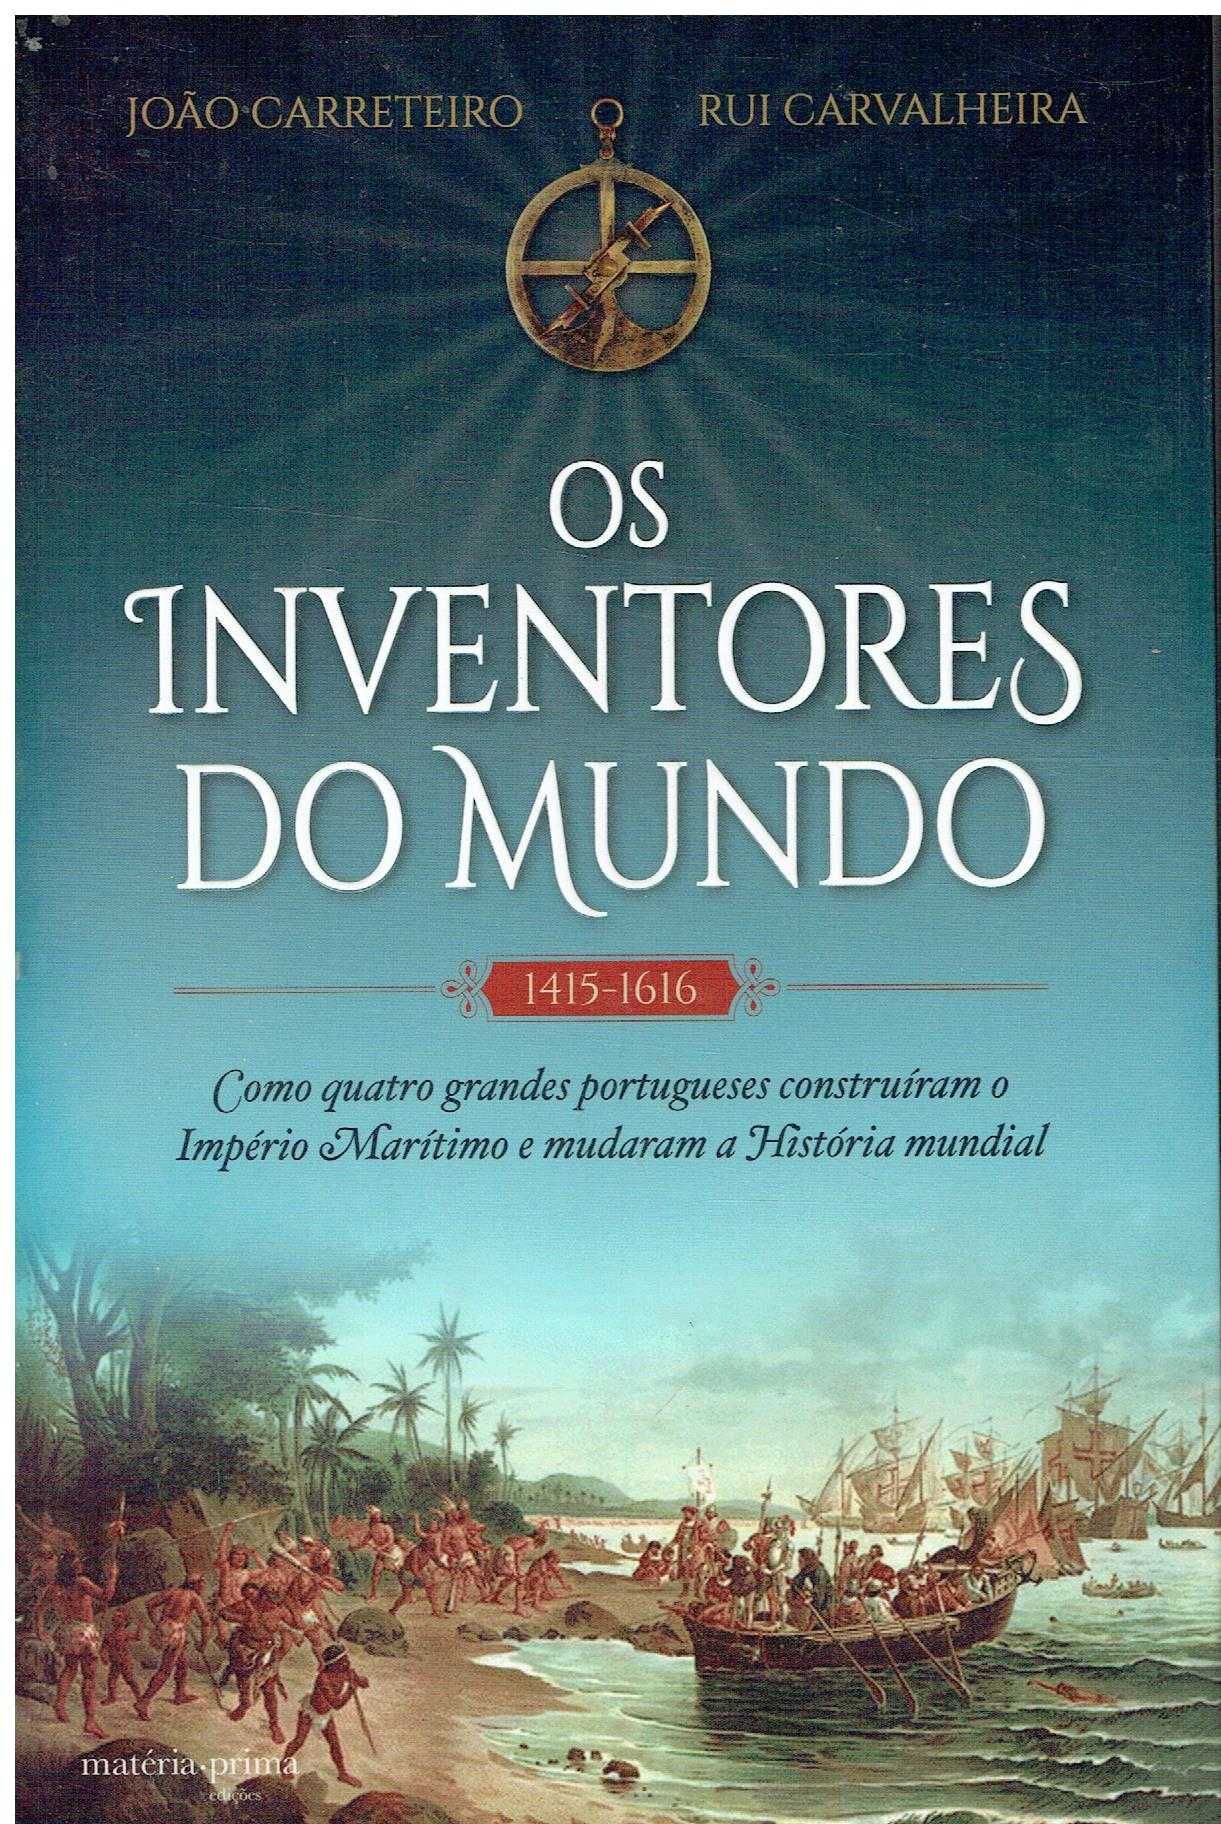 11772

Os Inventores do Mundo
de João Paulo Carreteiro